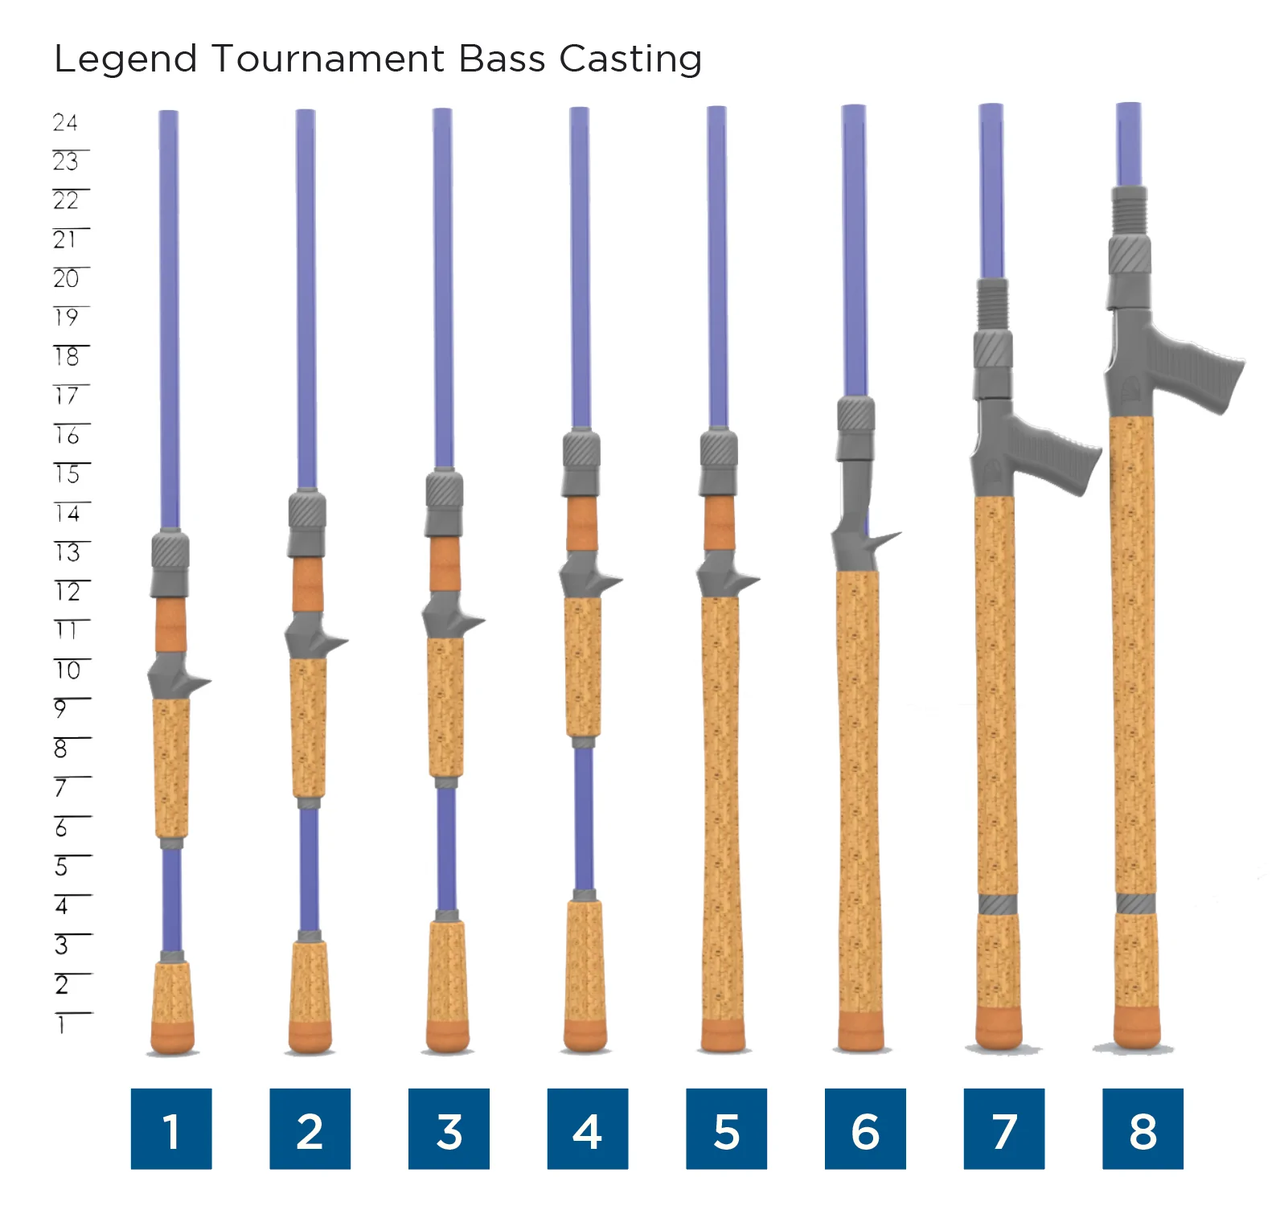 St Croix Legend Tournament Bass Casting Rods 